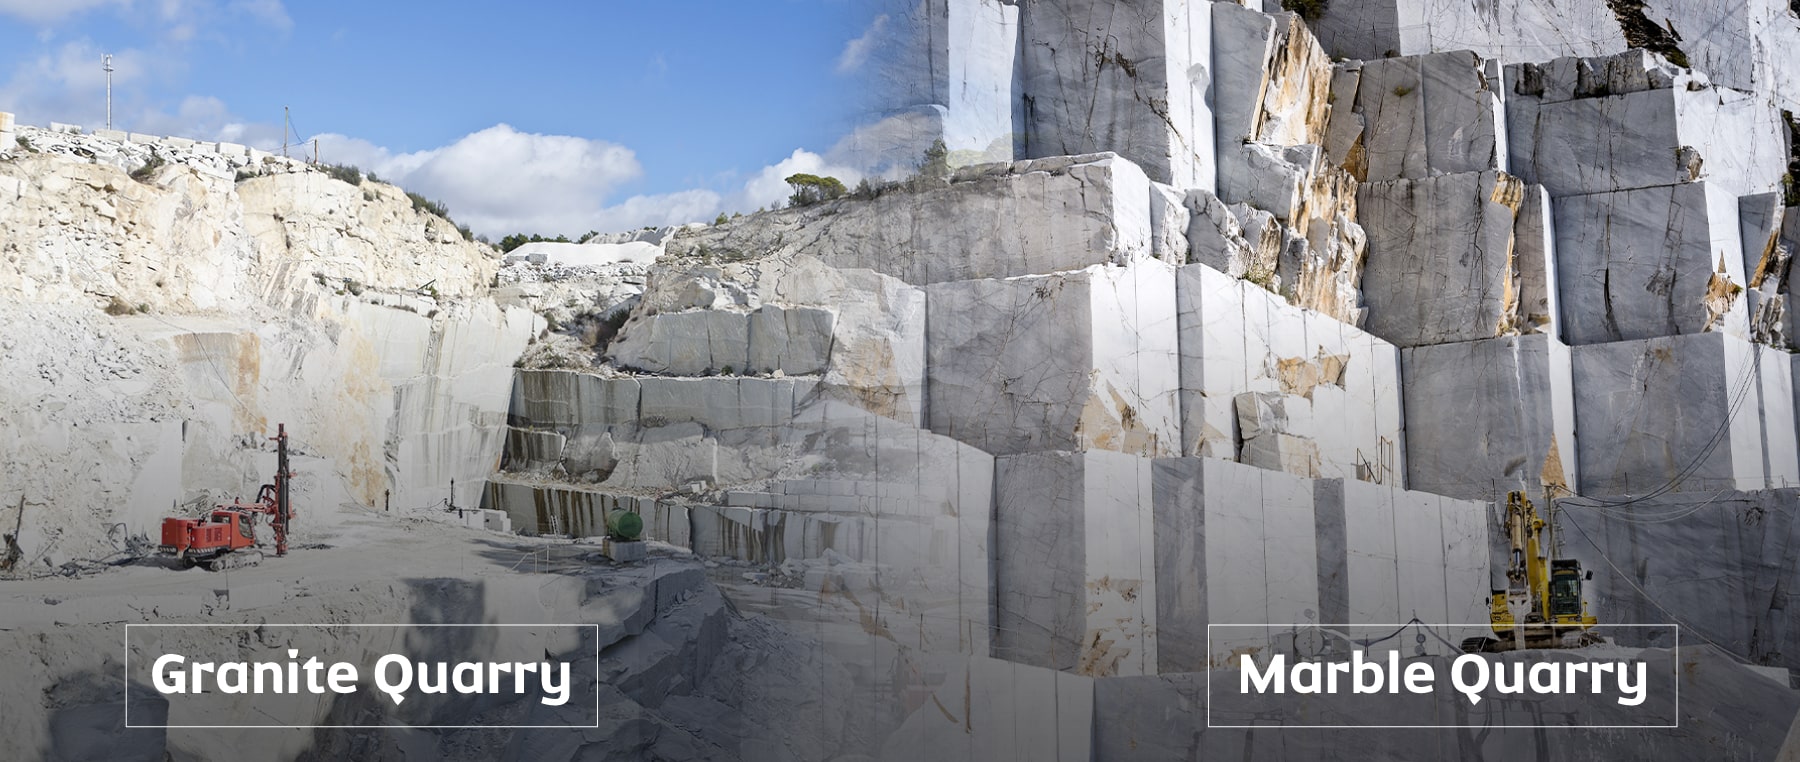 Granite quarry - Marble quarry